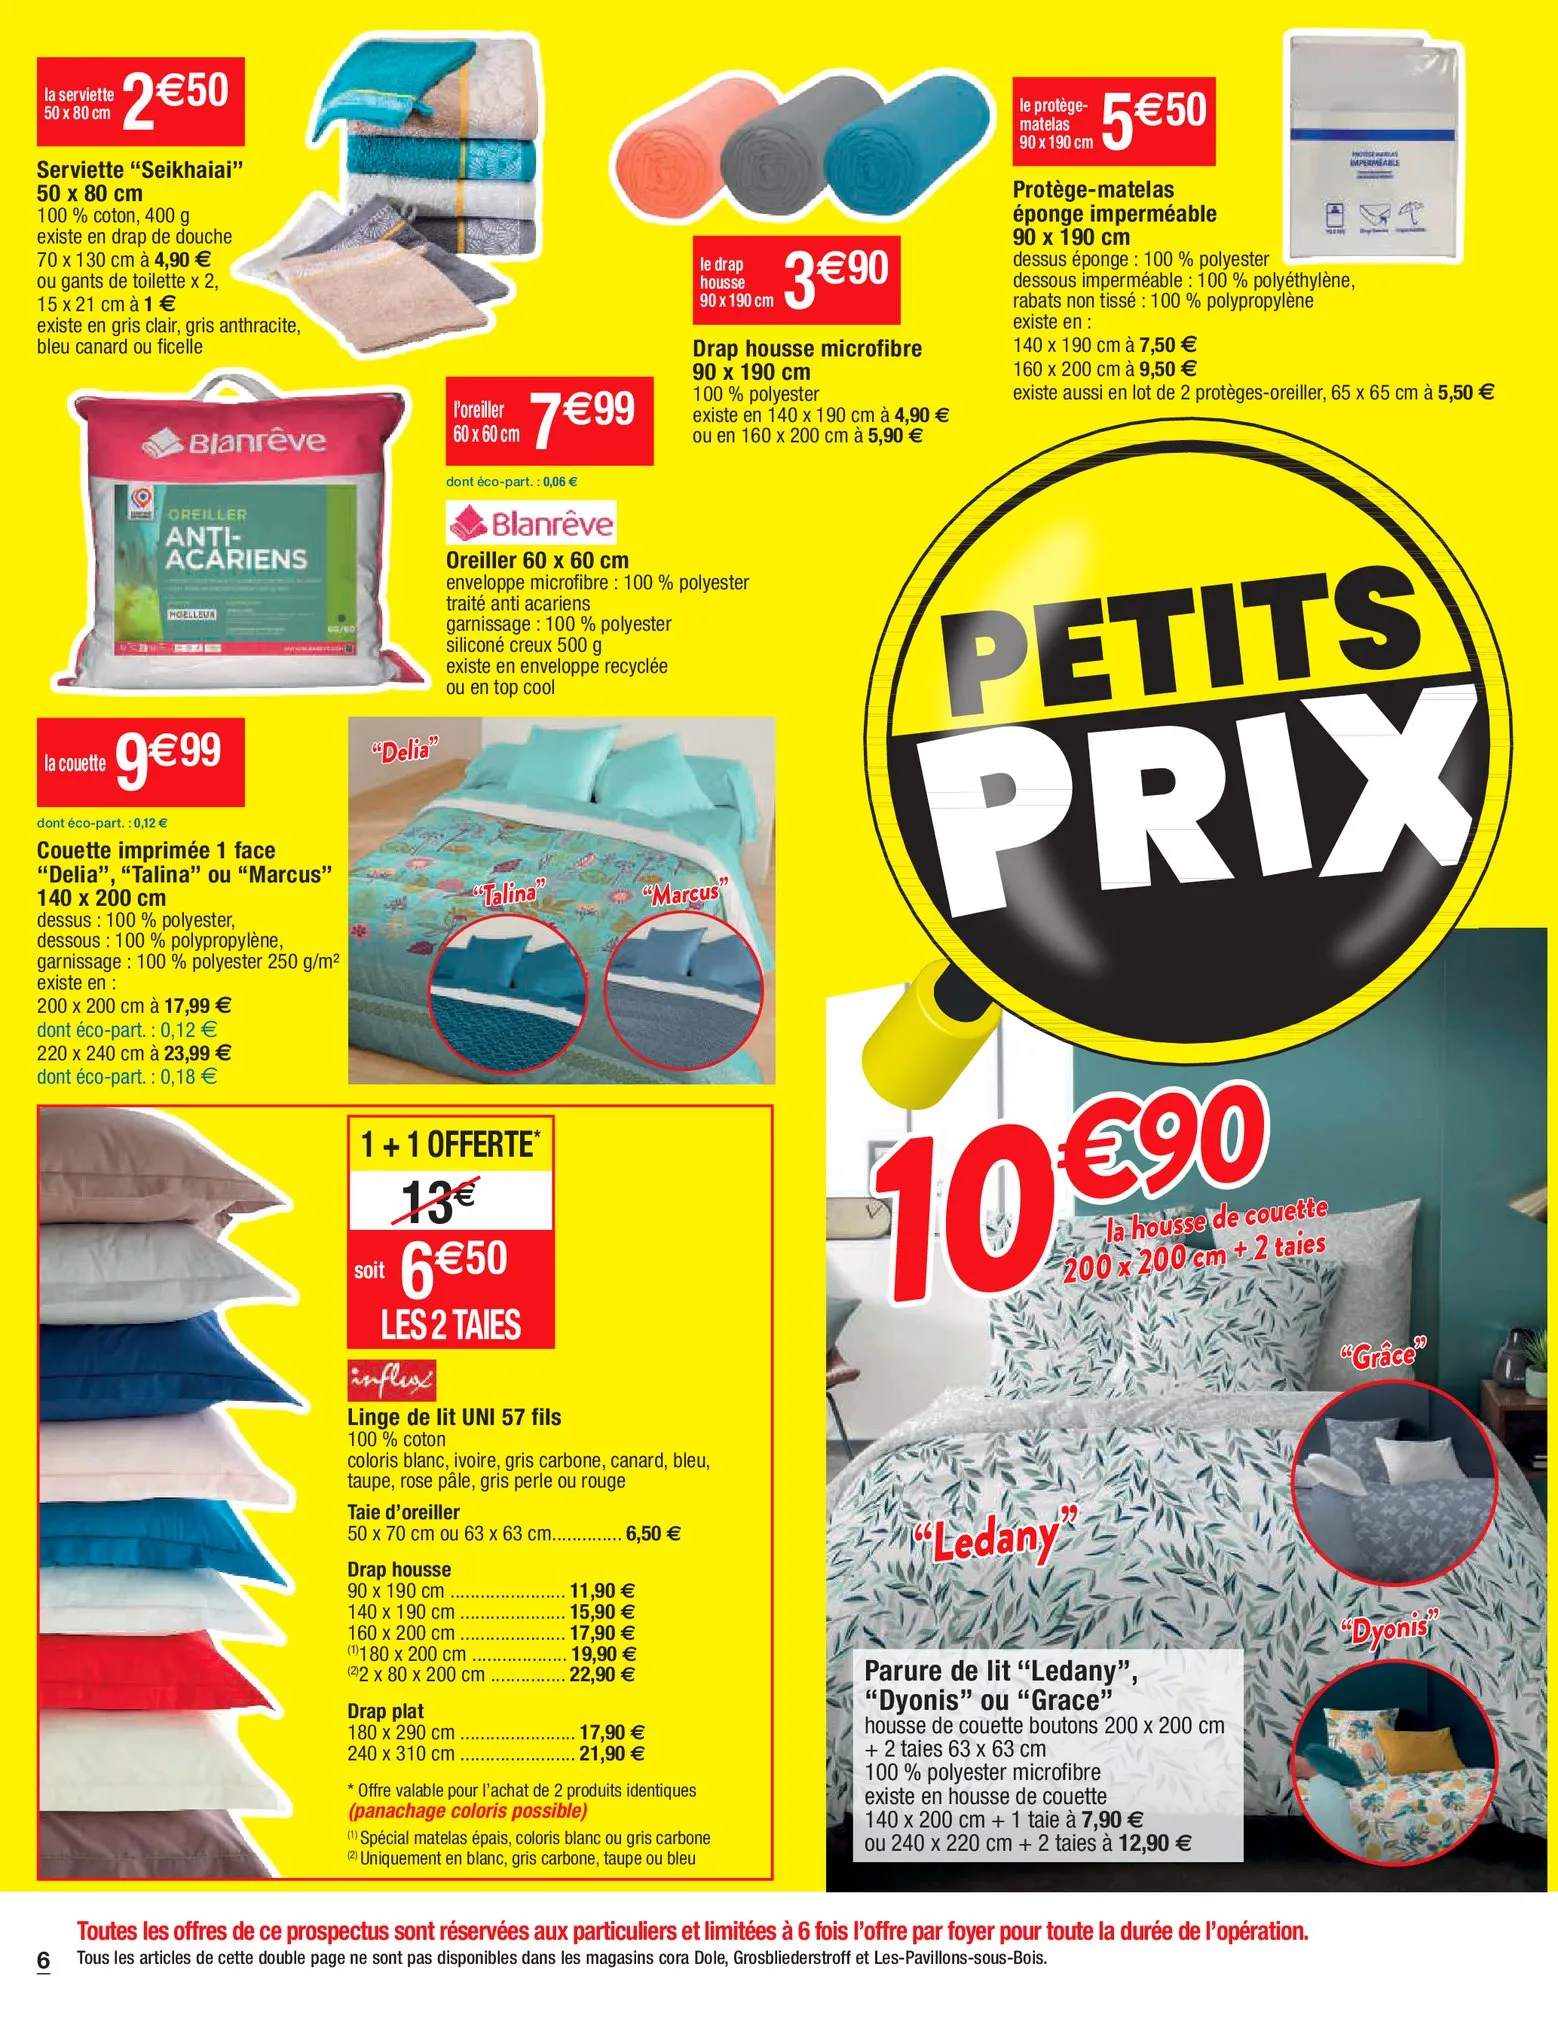 Catalogue Petits prix, page 00006